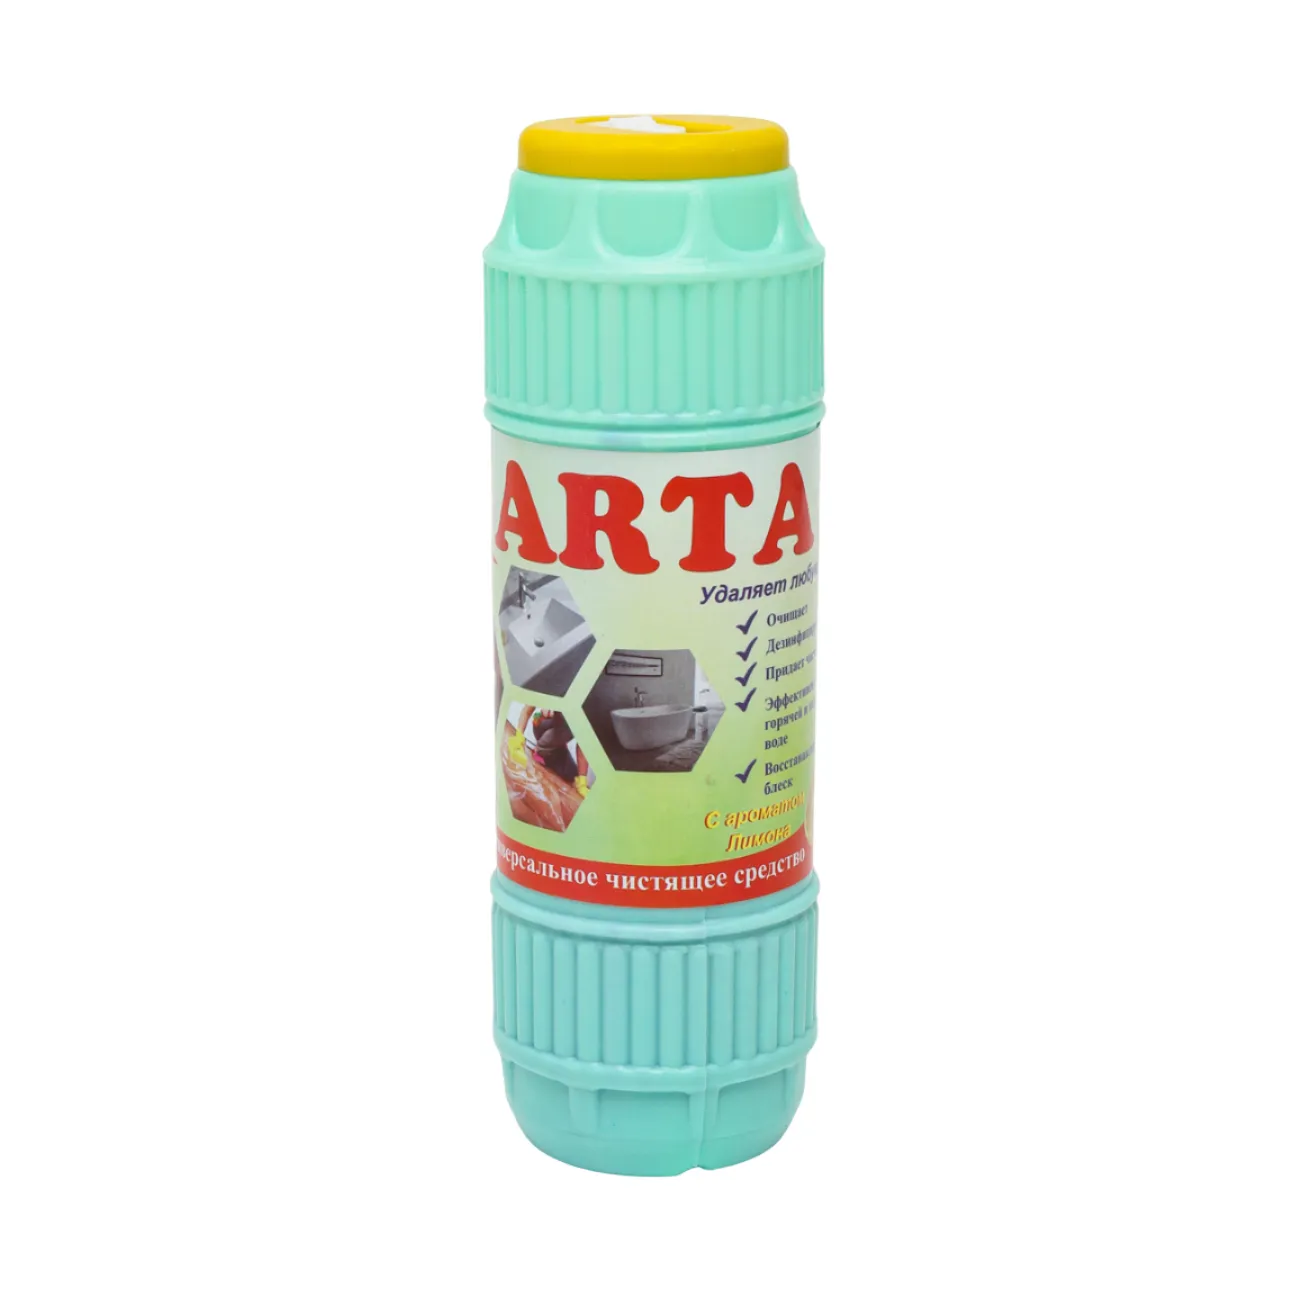 Limpiador doméstico ARTA de 500g, limpiador eficaz para el hogar, detergente en polvo para limpieza de baños y cocinas, desengrasante